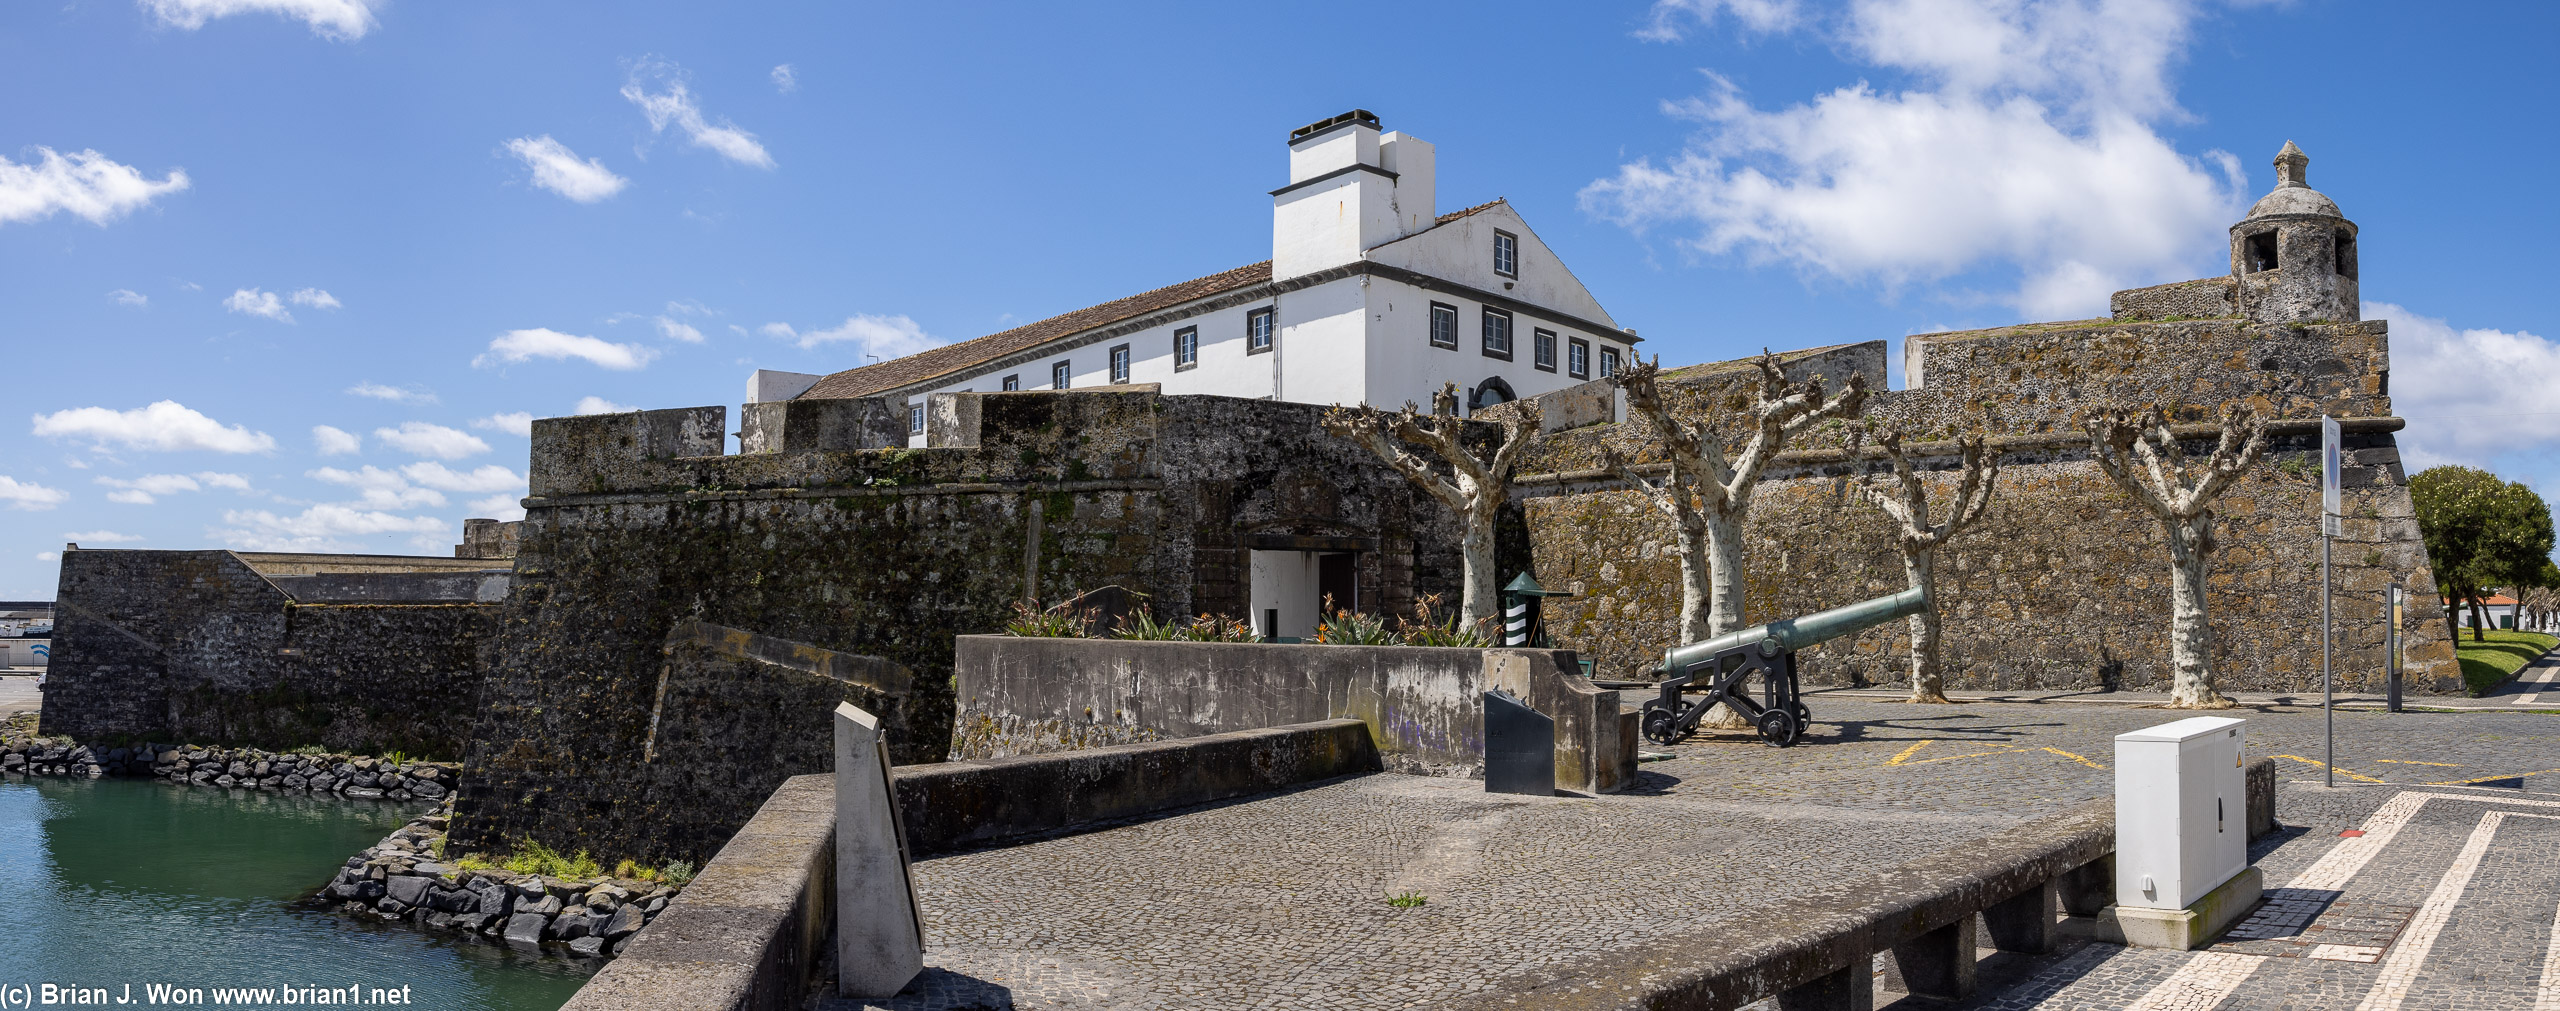 Forte de Sao Bras, now home to a military museum.